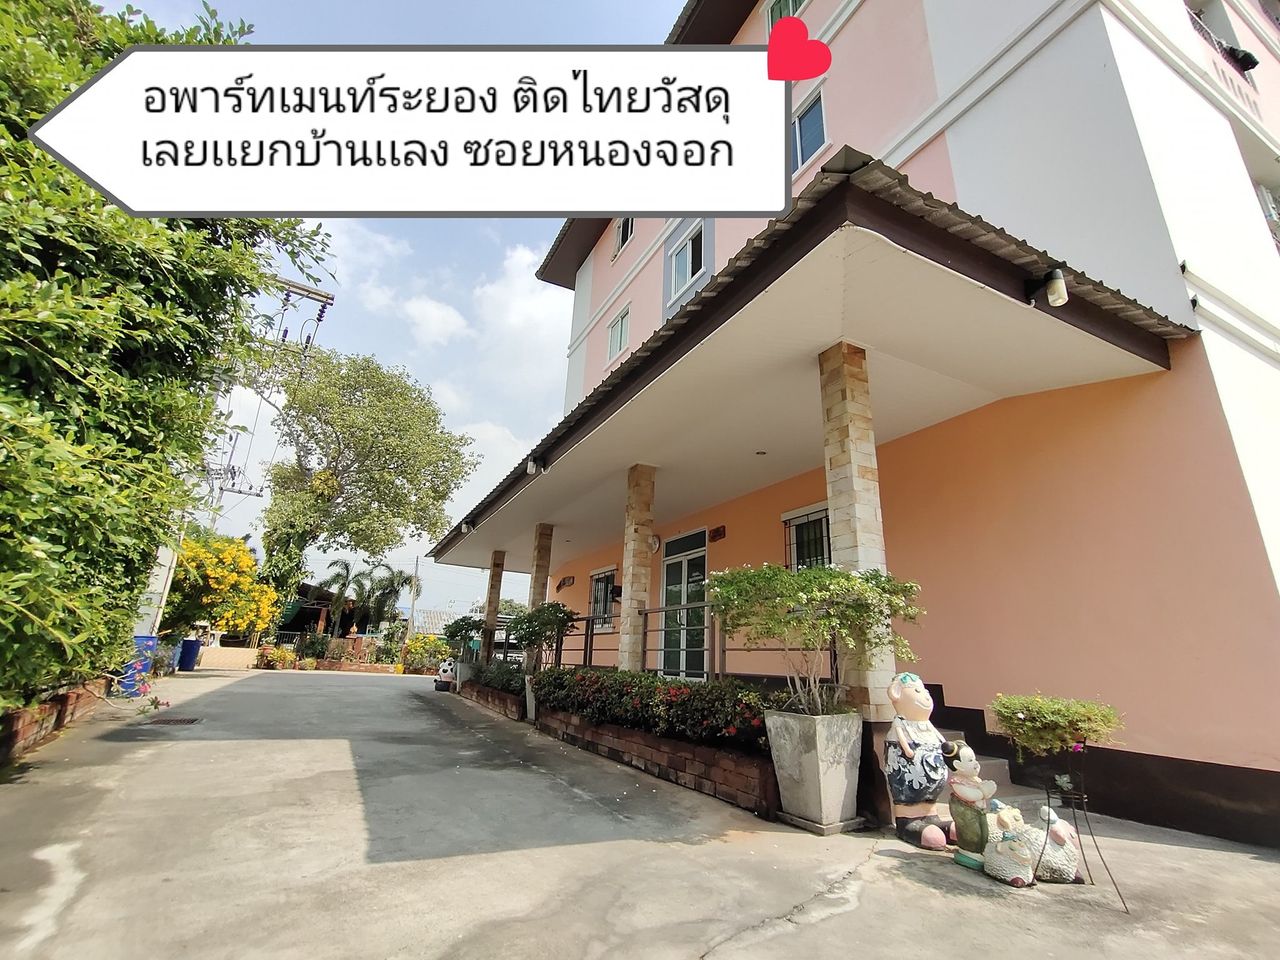 รูปภาพเพิ่มเติม หนองจอก-อพาร์ทเมนท์-ระยอง - Nongchok-Apartment-Rayong - ลำดับที่ 12